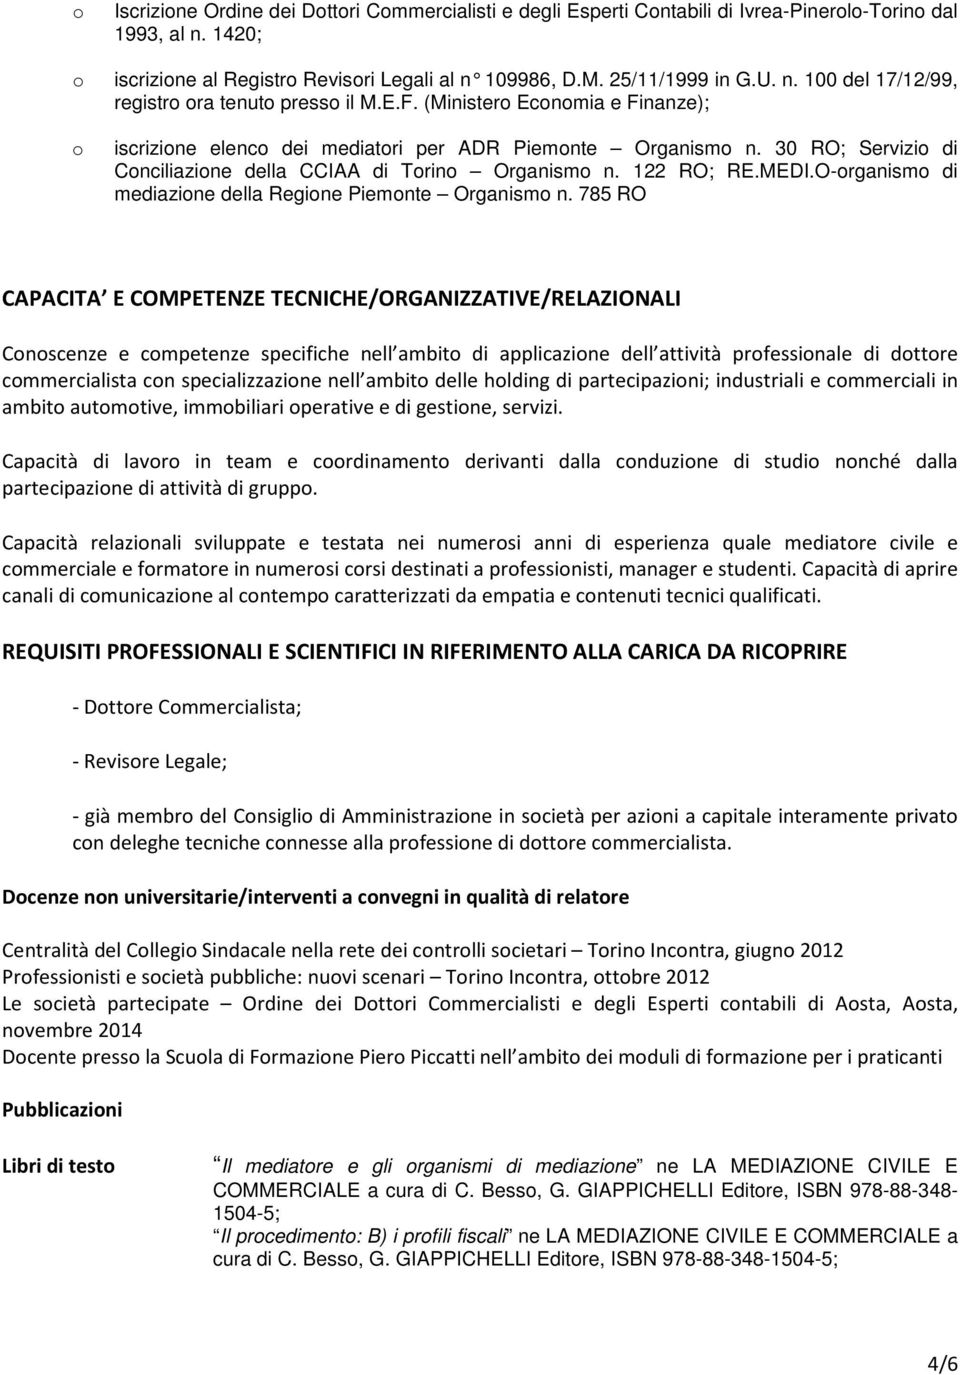 30 RO; Servizio di Conciliazione della CCIAA di Torino Organismo n. 122 RO; RE.MEDI.O-organismo di mediazione della Regione Piemonte Organismo n.